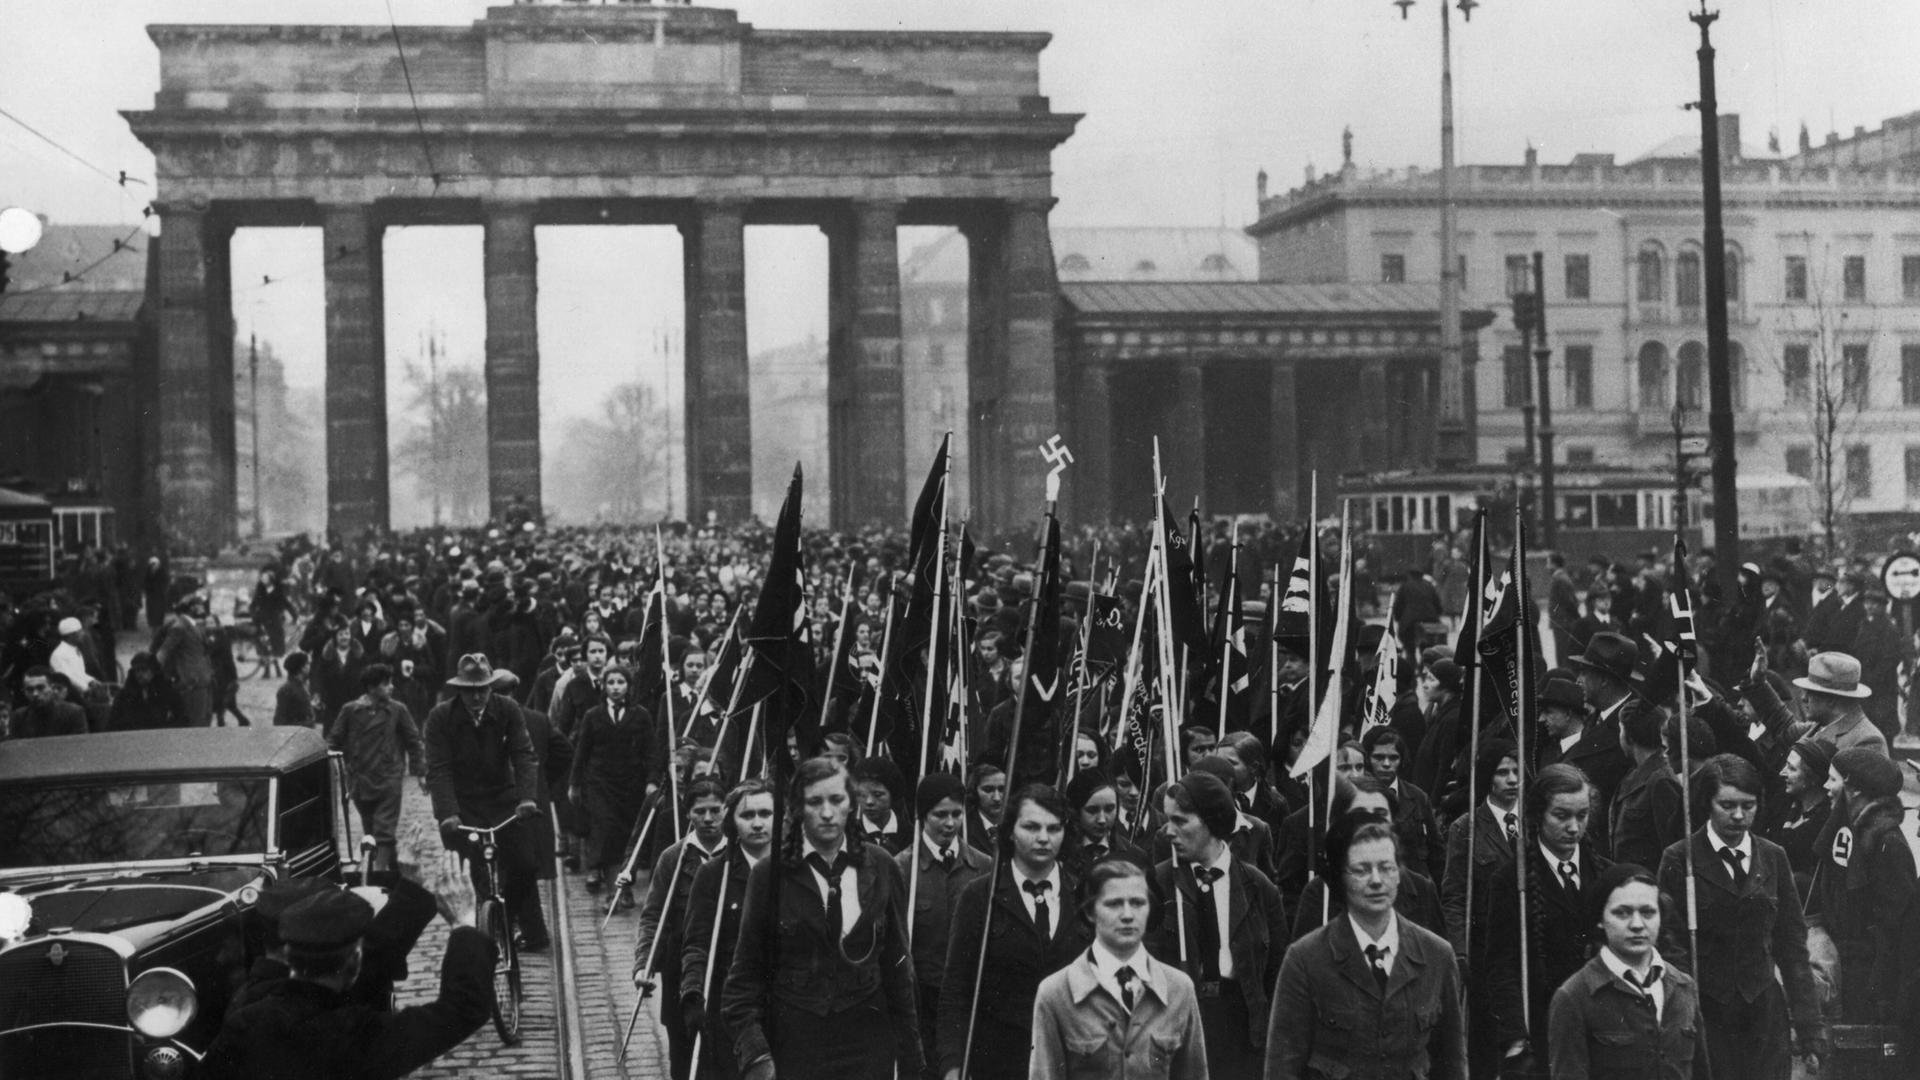 Der "Bund Deutscher Mädel" beim Marsch durch das Brandenburger Tor am 8. März 1933.